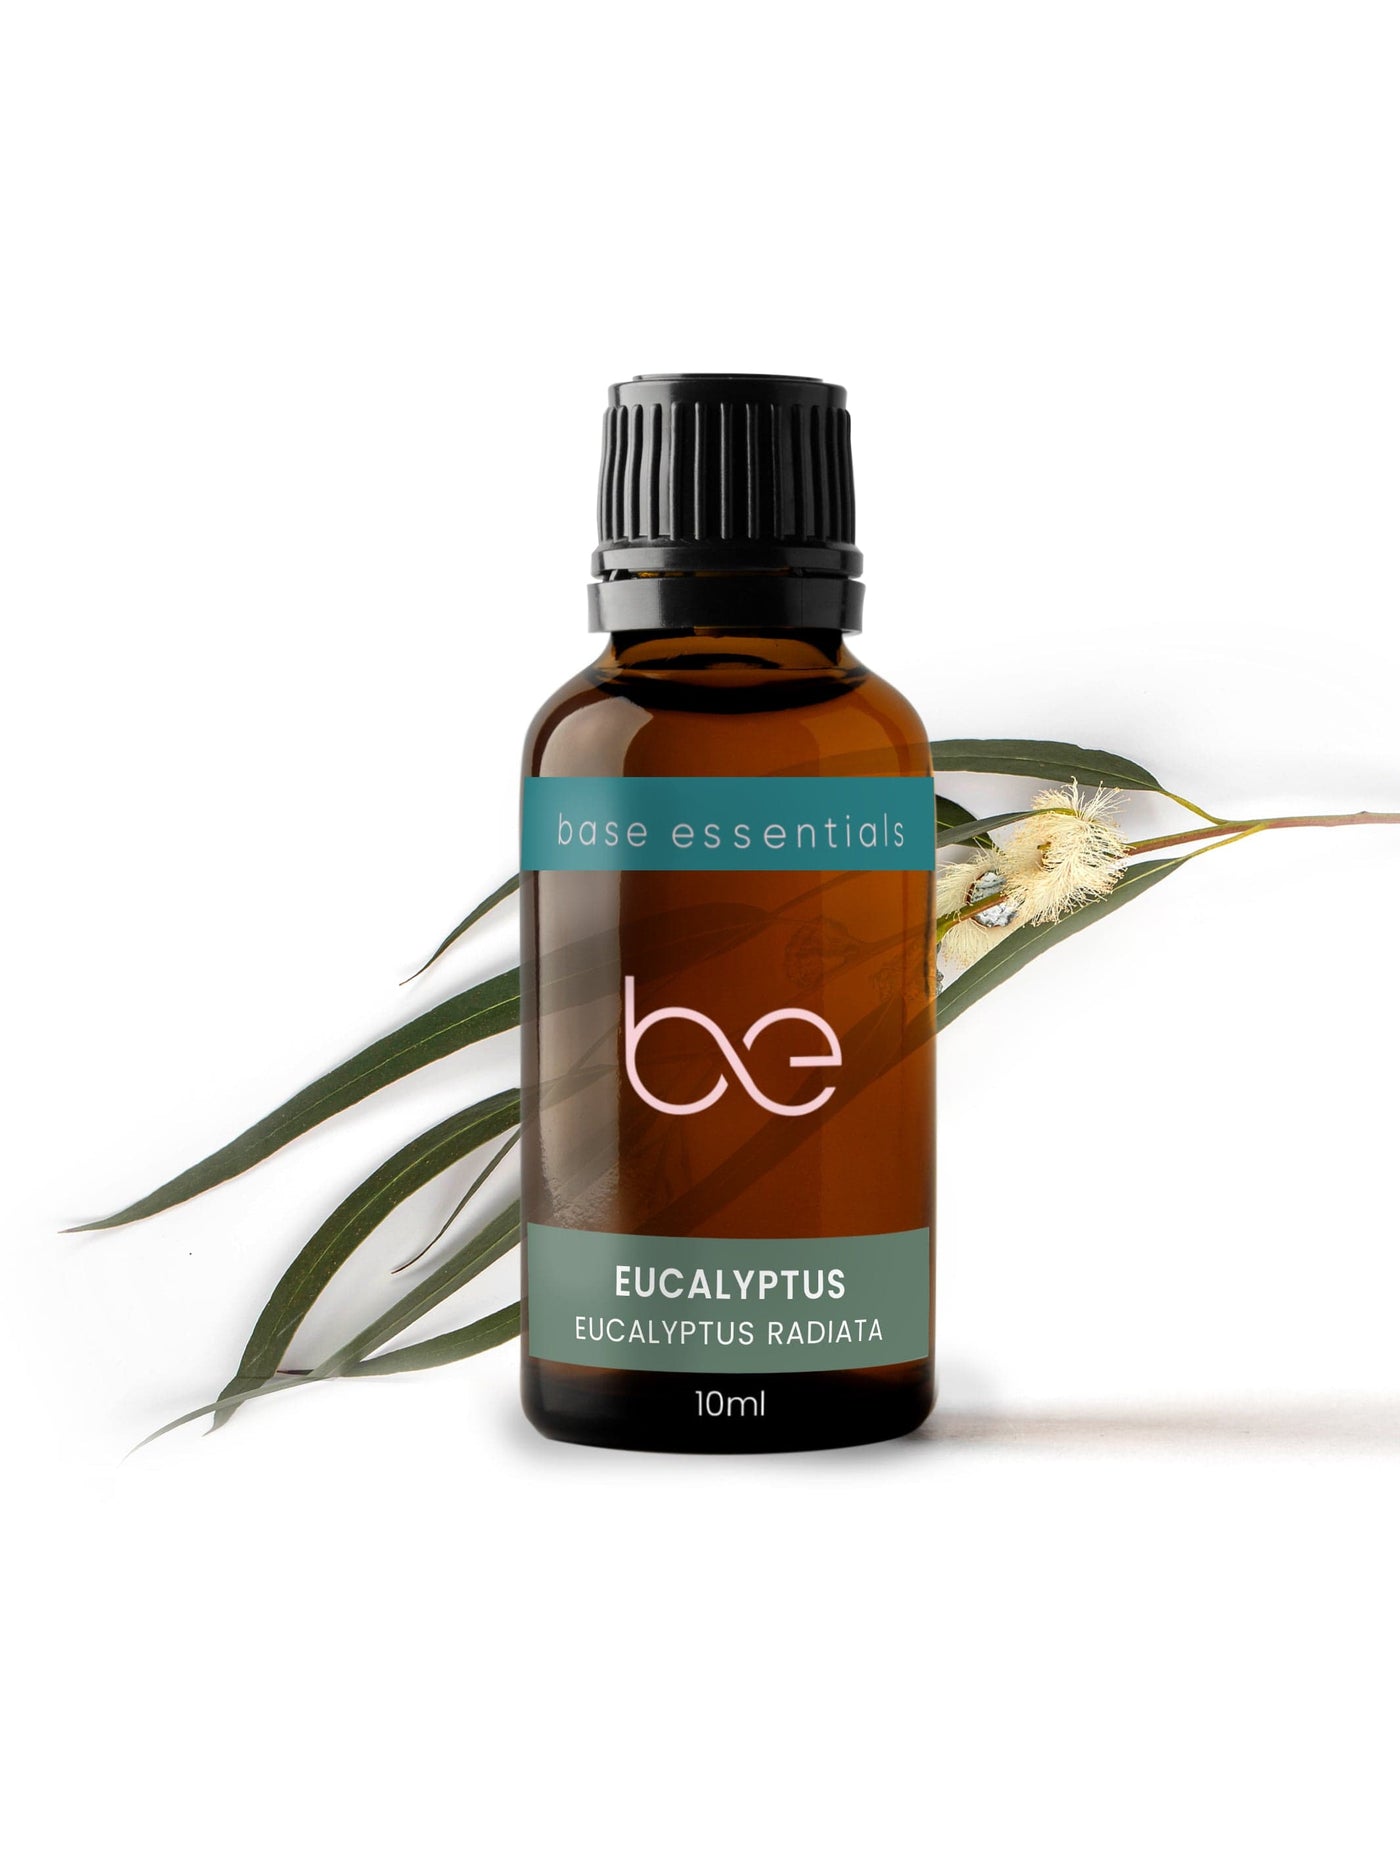  Organic Essential Oil - Eucalyptus Radie by